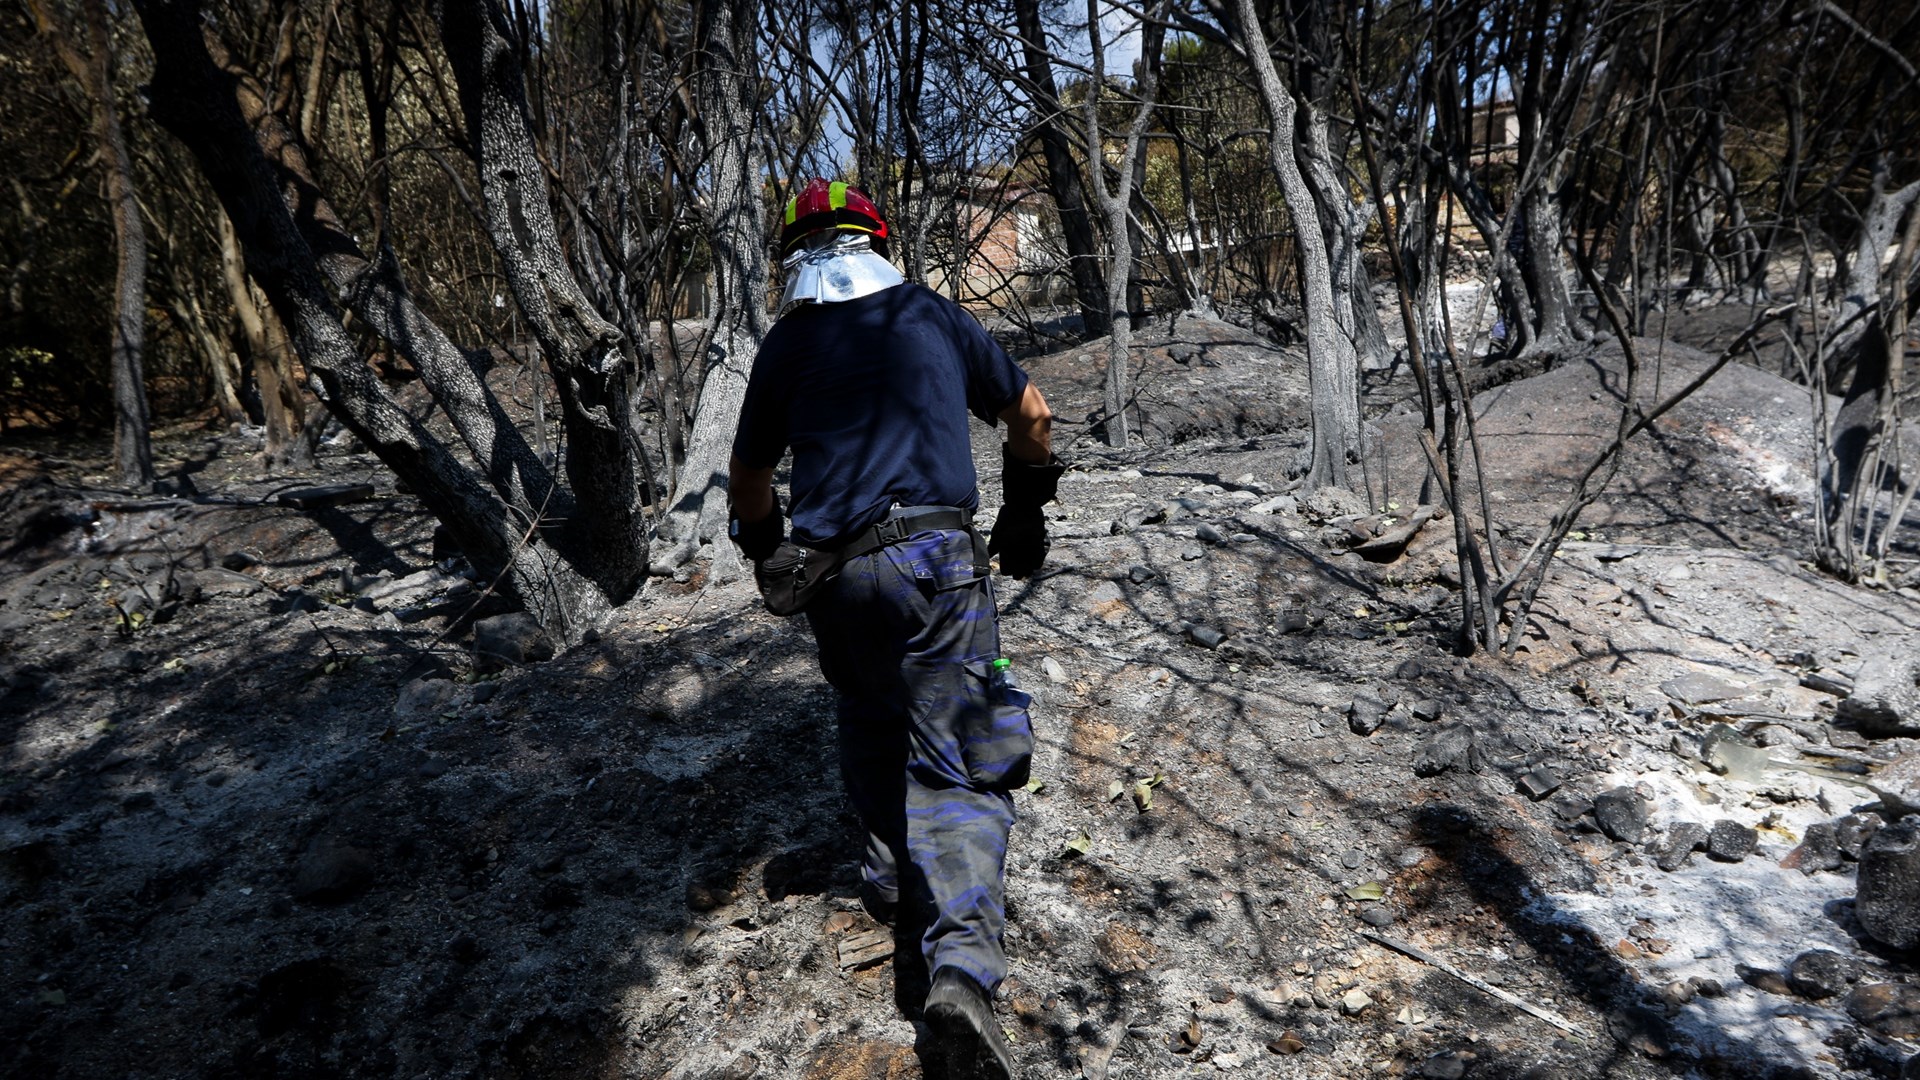 Ταυτοποιήθηκαν ακόμη 6 σοροί από την φονική πυρκαγιά στο Μάτι – ΤΩΡΑ